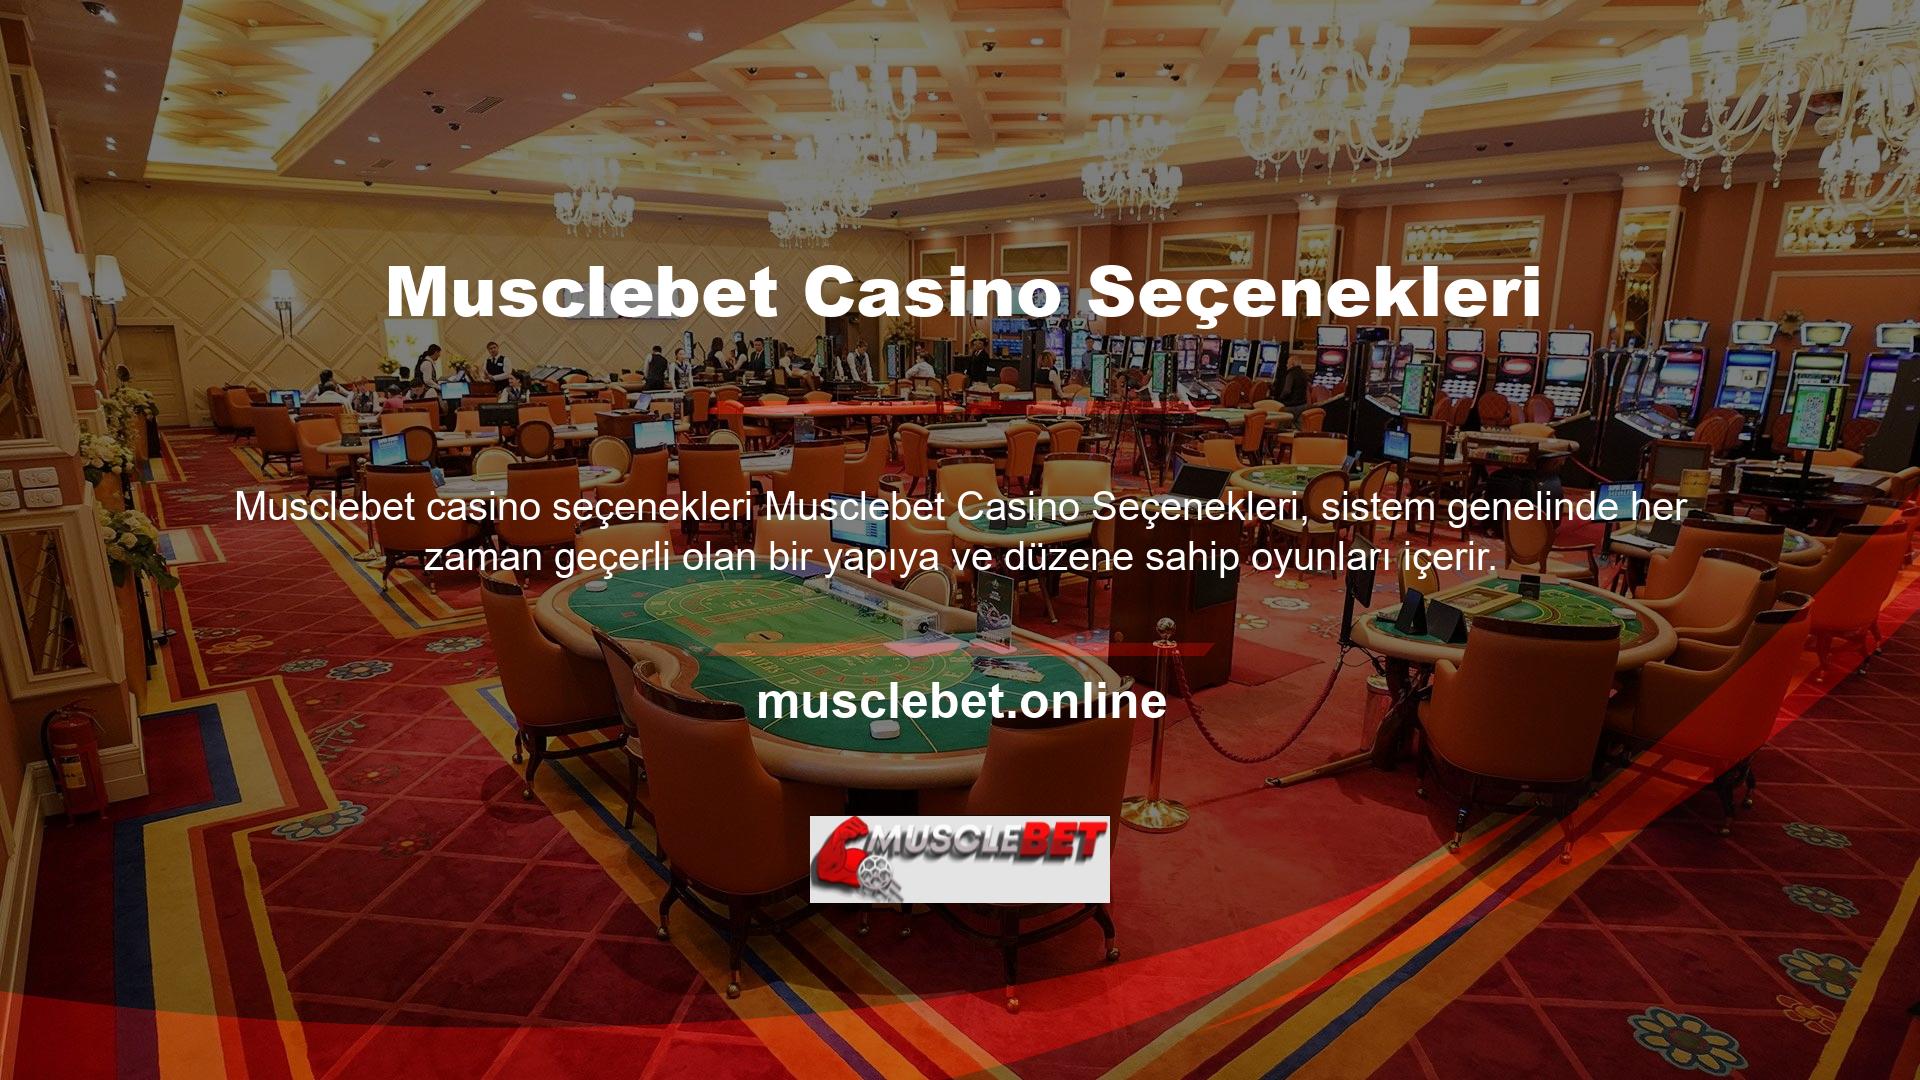 Güvenilir casino oyunlarını sitenin ana sayfasında bulabilirsiniz